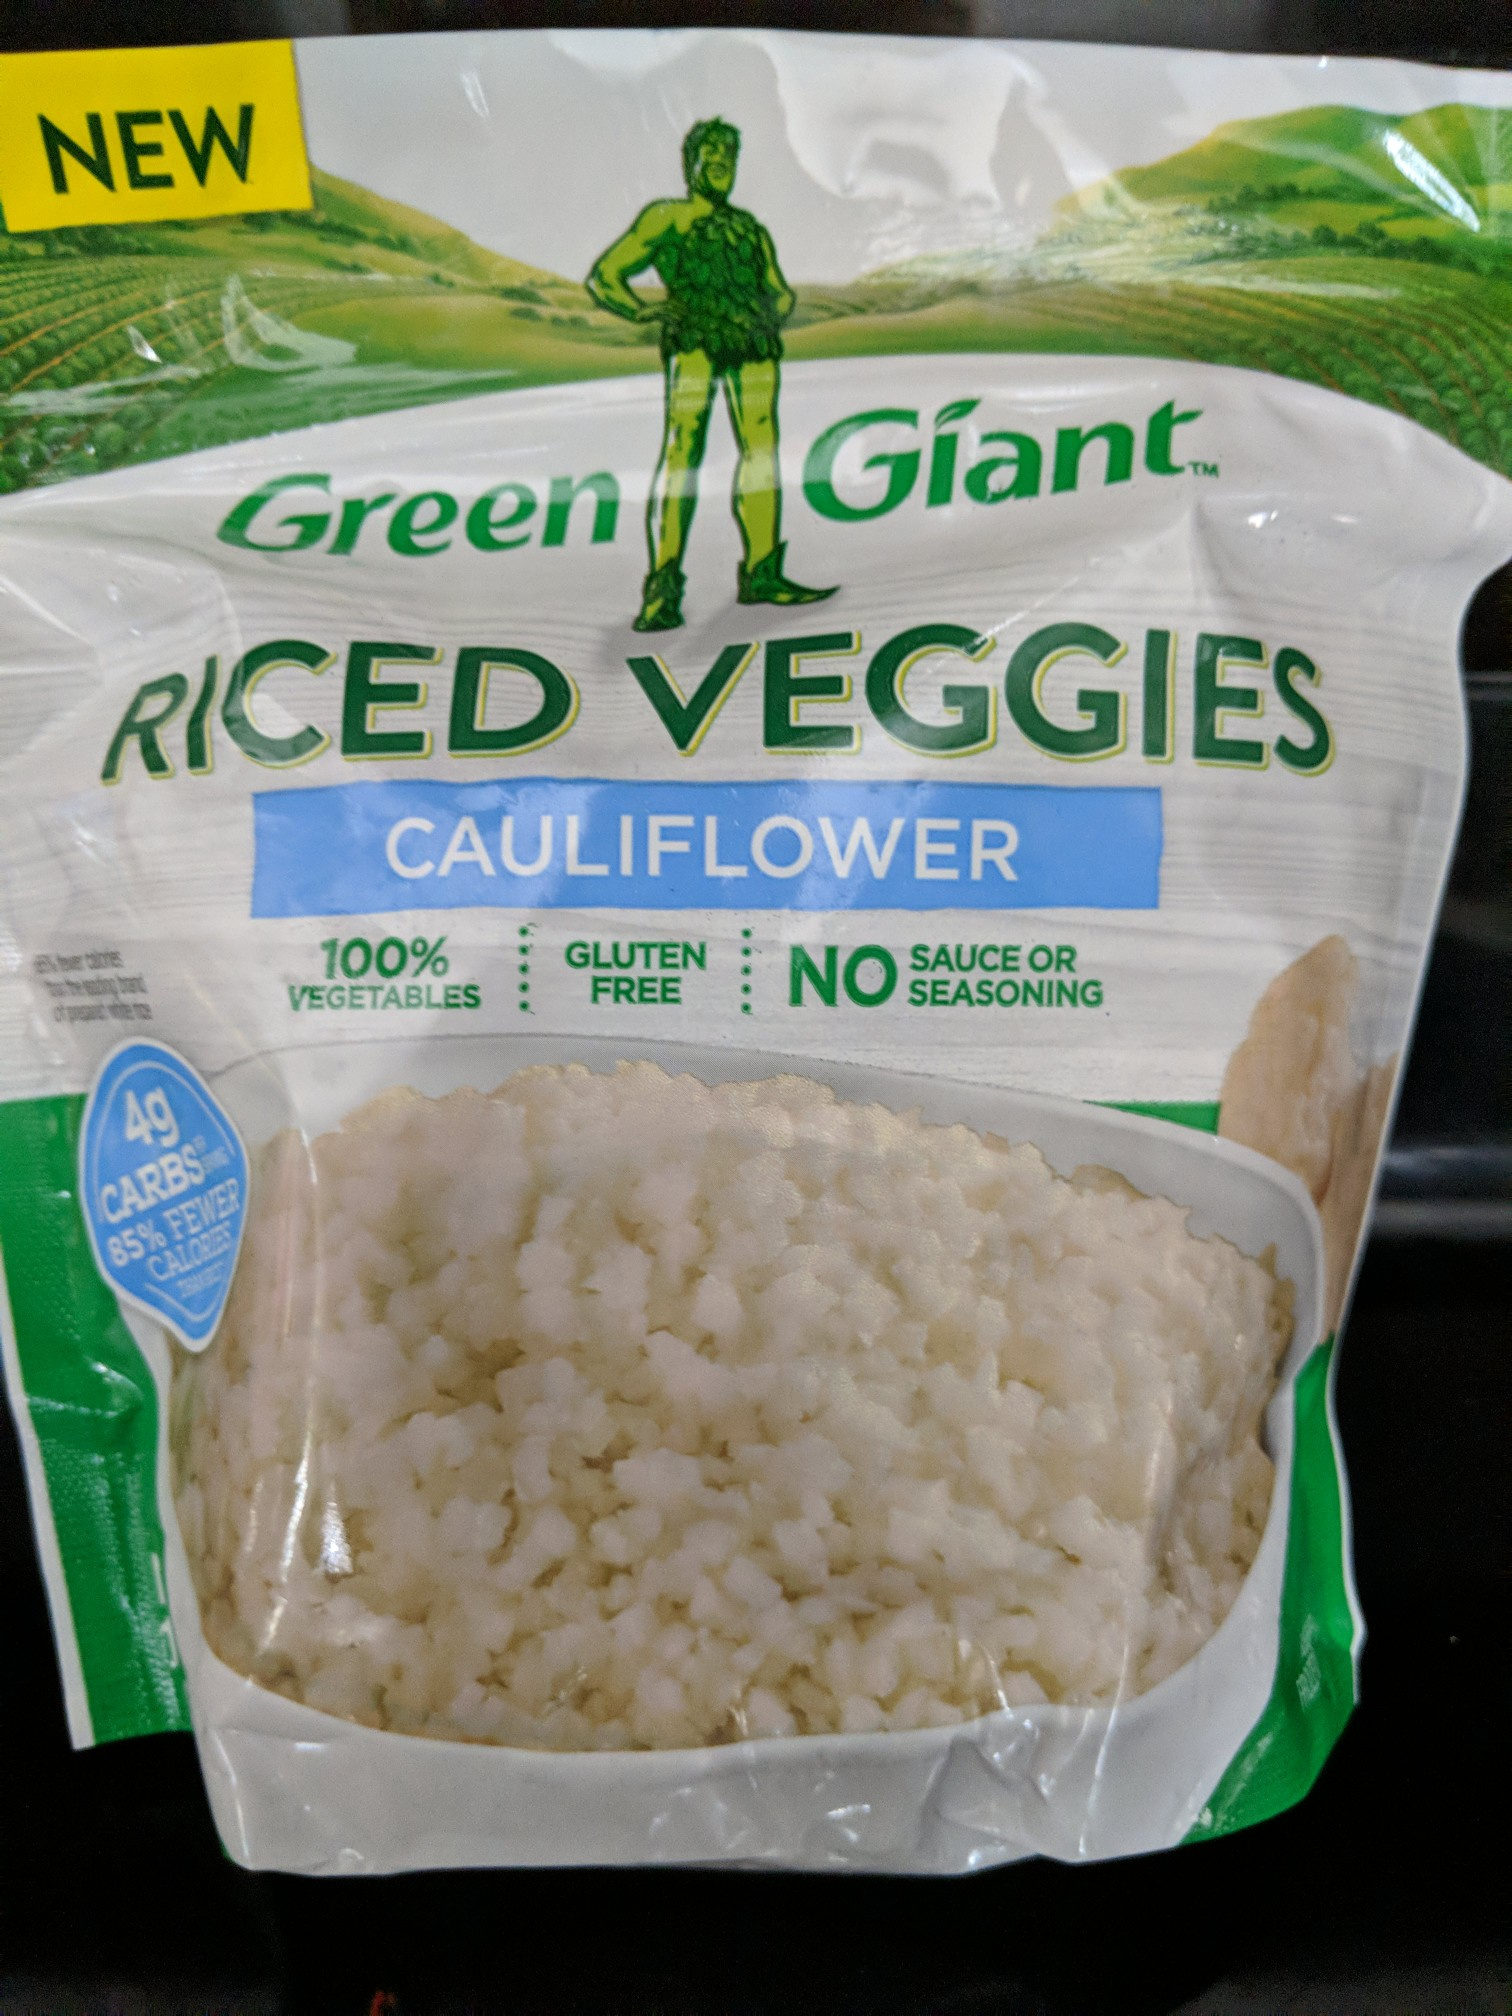 Cauliflower riced veggies, cauliflower - Product